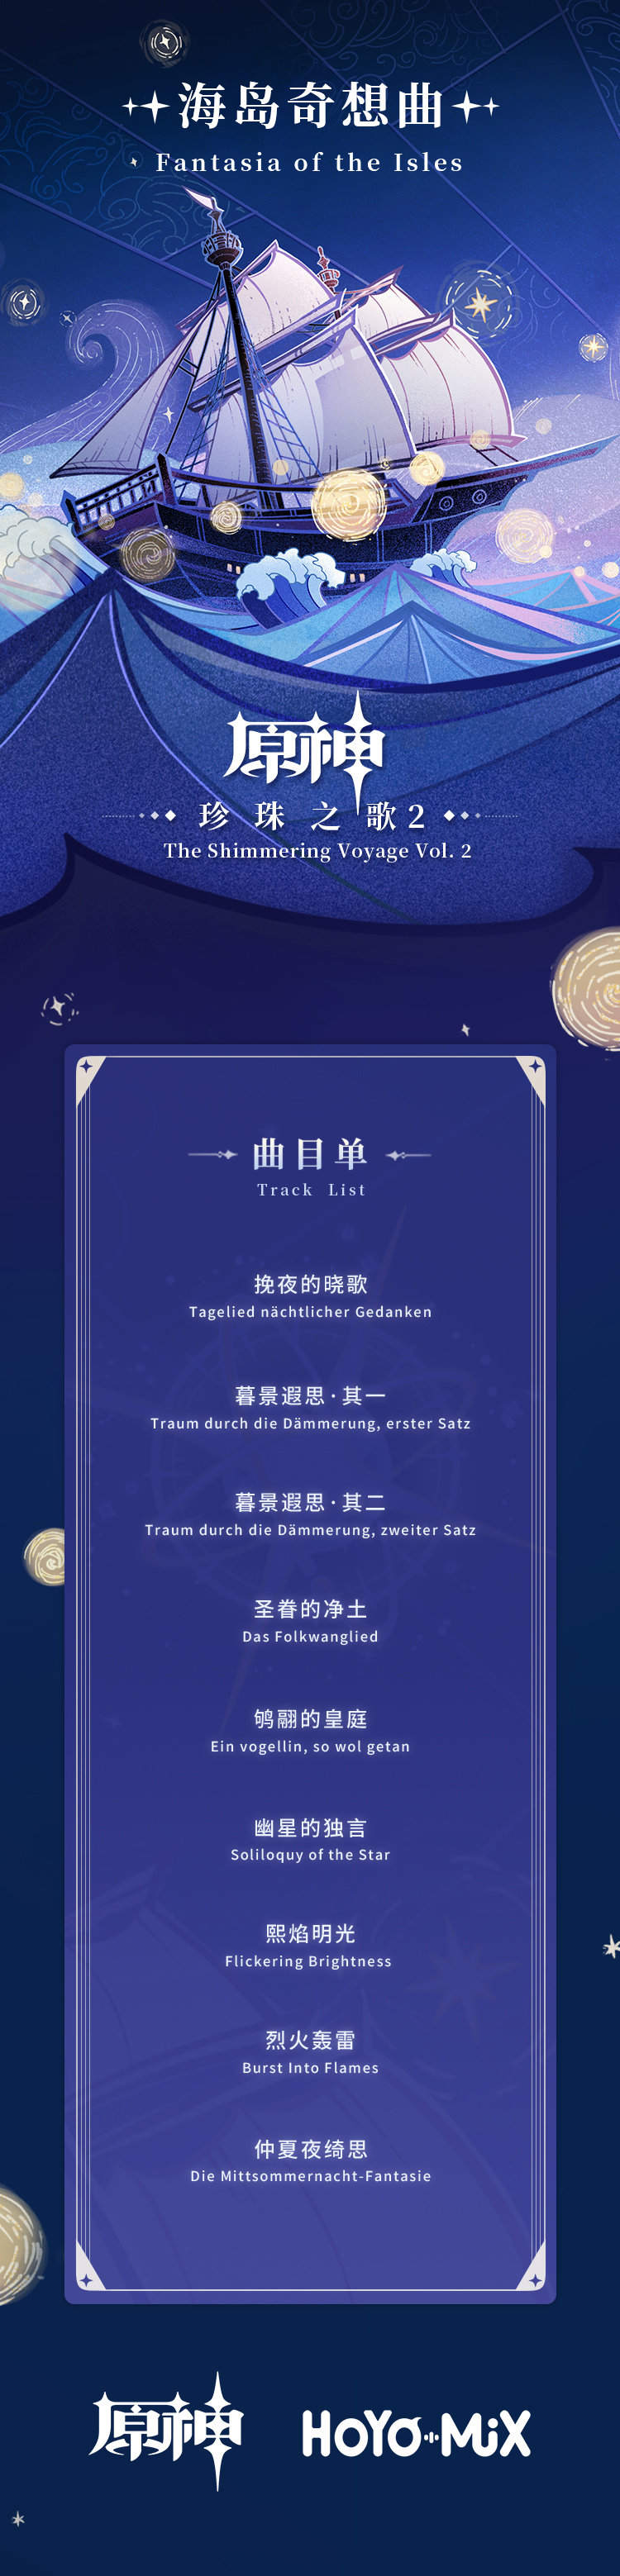 原神音乐：2.0 回顾主题OST《珍珠之歌2》现已上线插图2